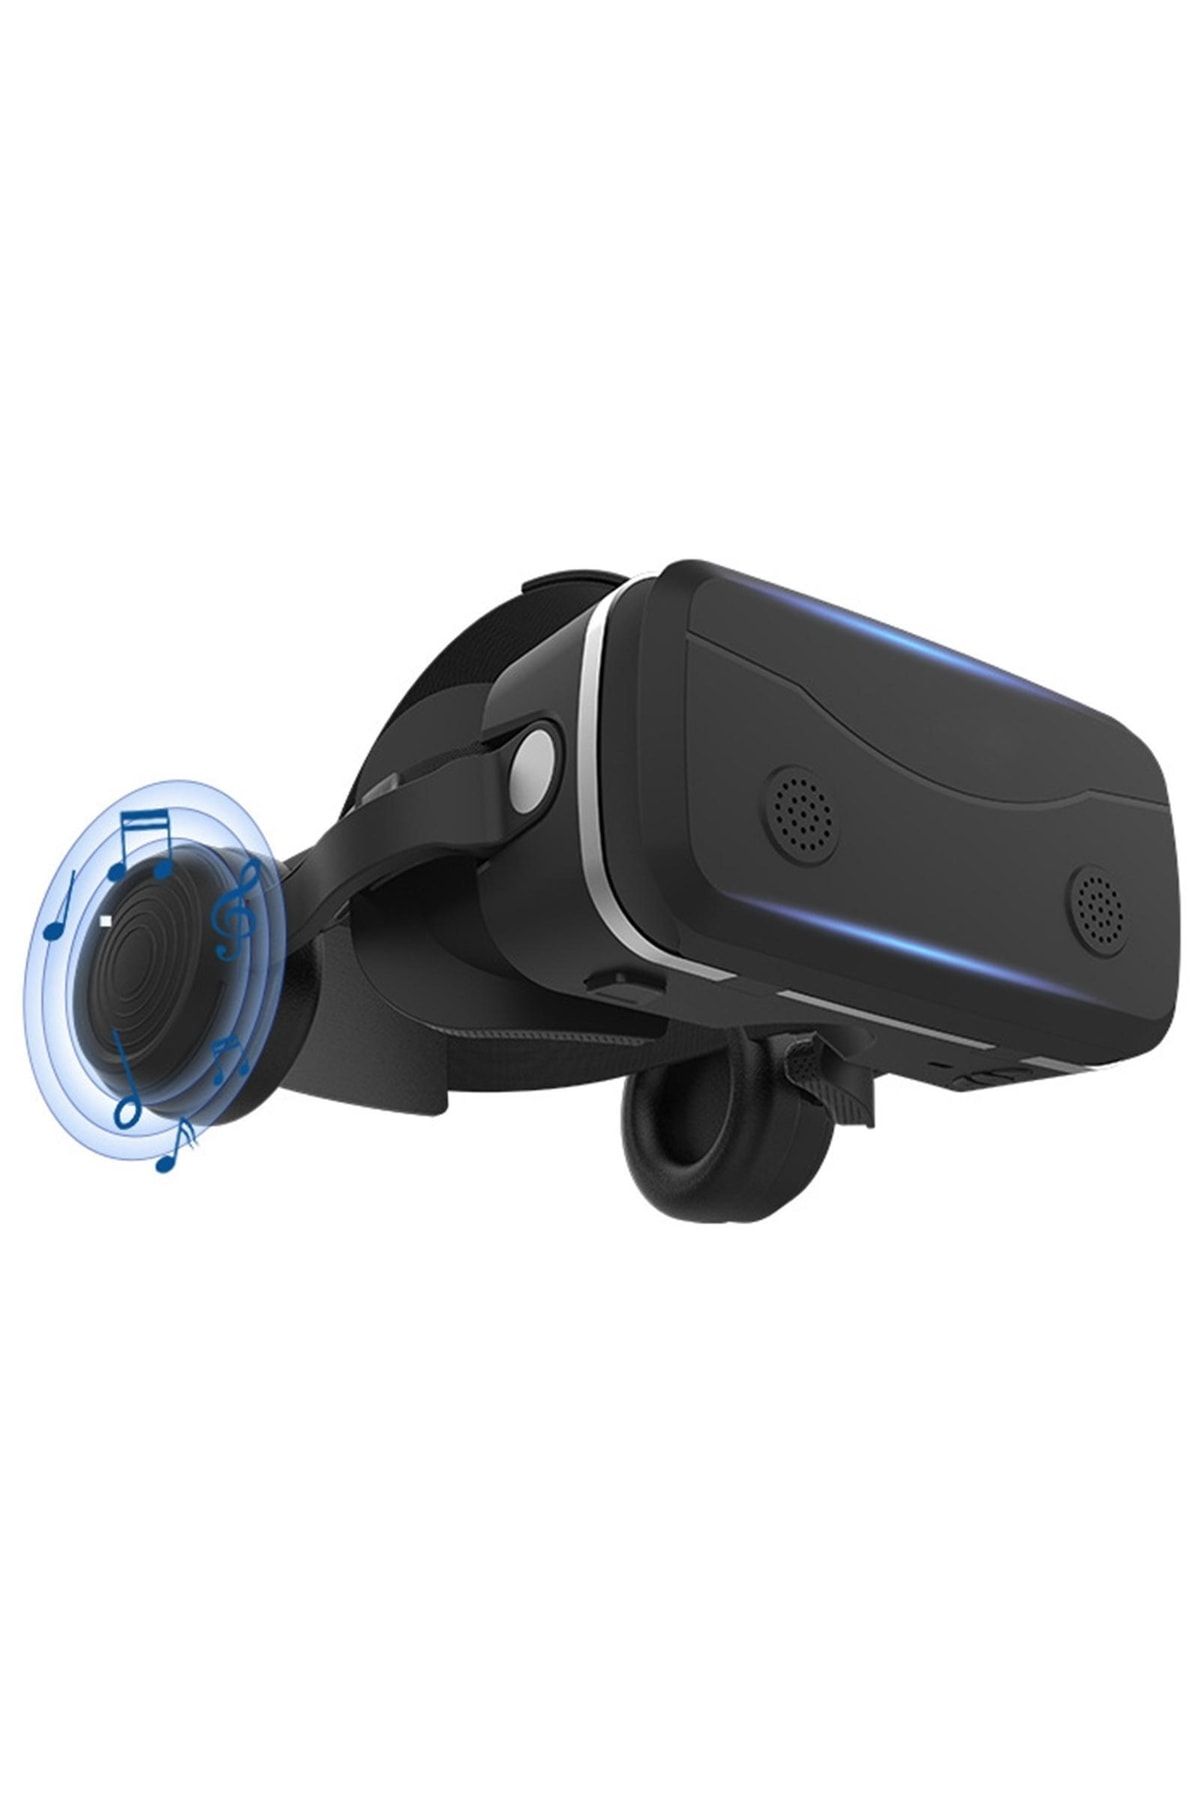 VR Shinecon Scg15e Sanal Gerçeklik Gözlükleri 4.7-7 Inç Cep Telefonları Için Stereo Kulaklıklı - Siyah